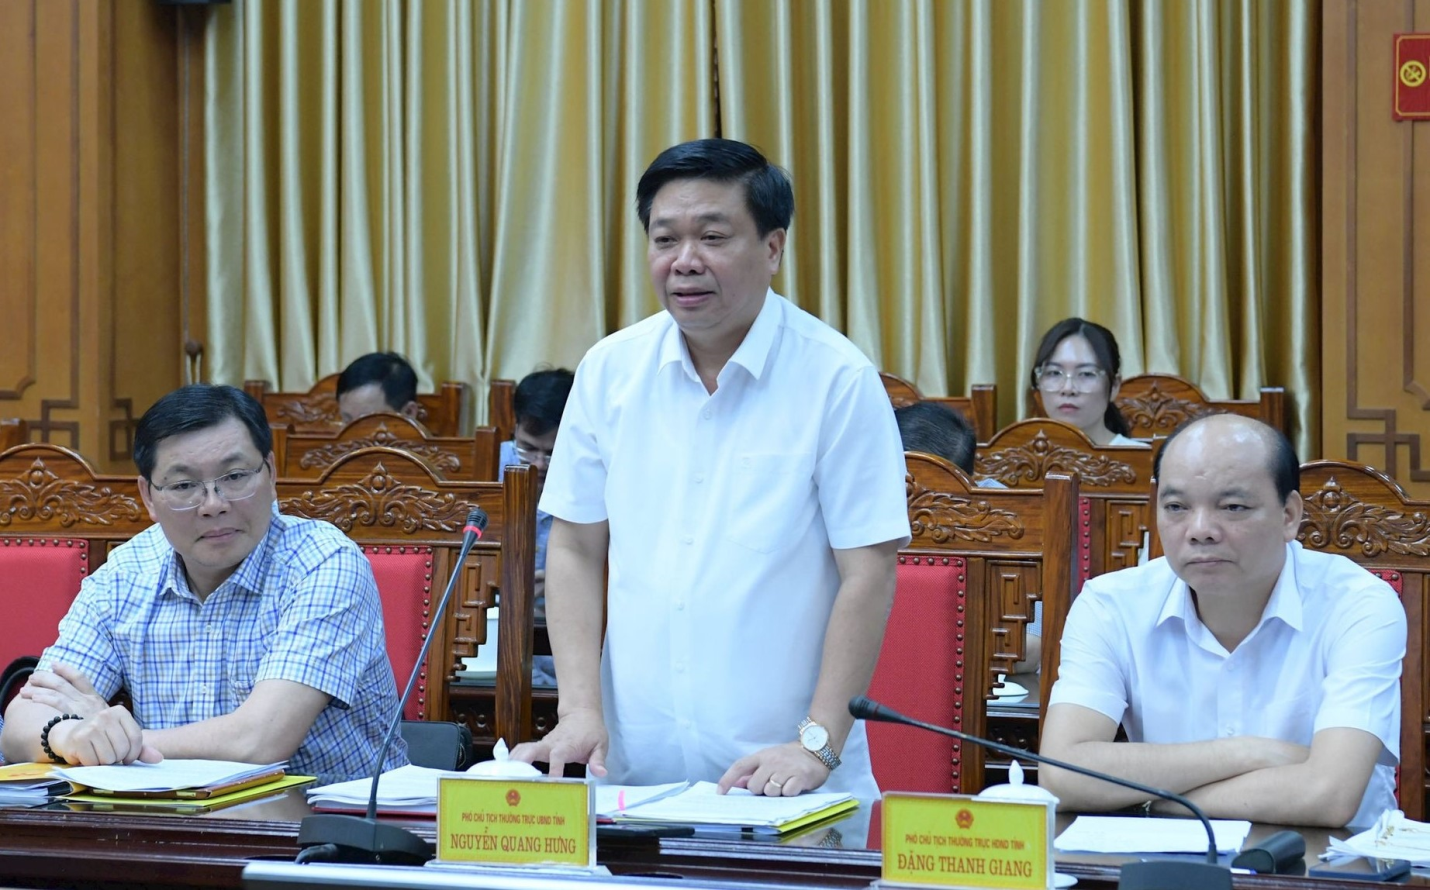 Kiểm toán Nhà nước công bố Quyết định kiểm toán tại tỉnh Thái Bình